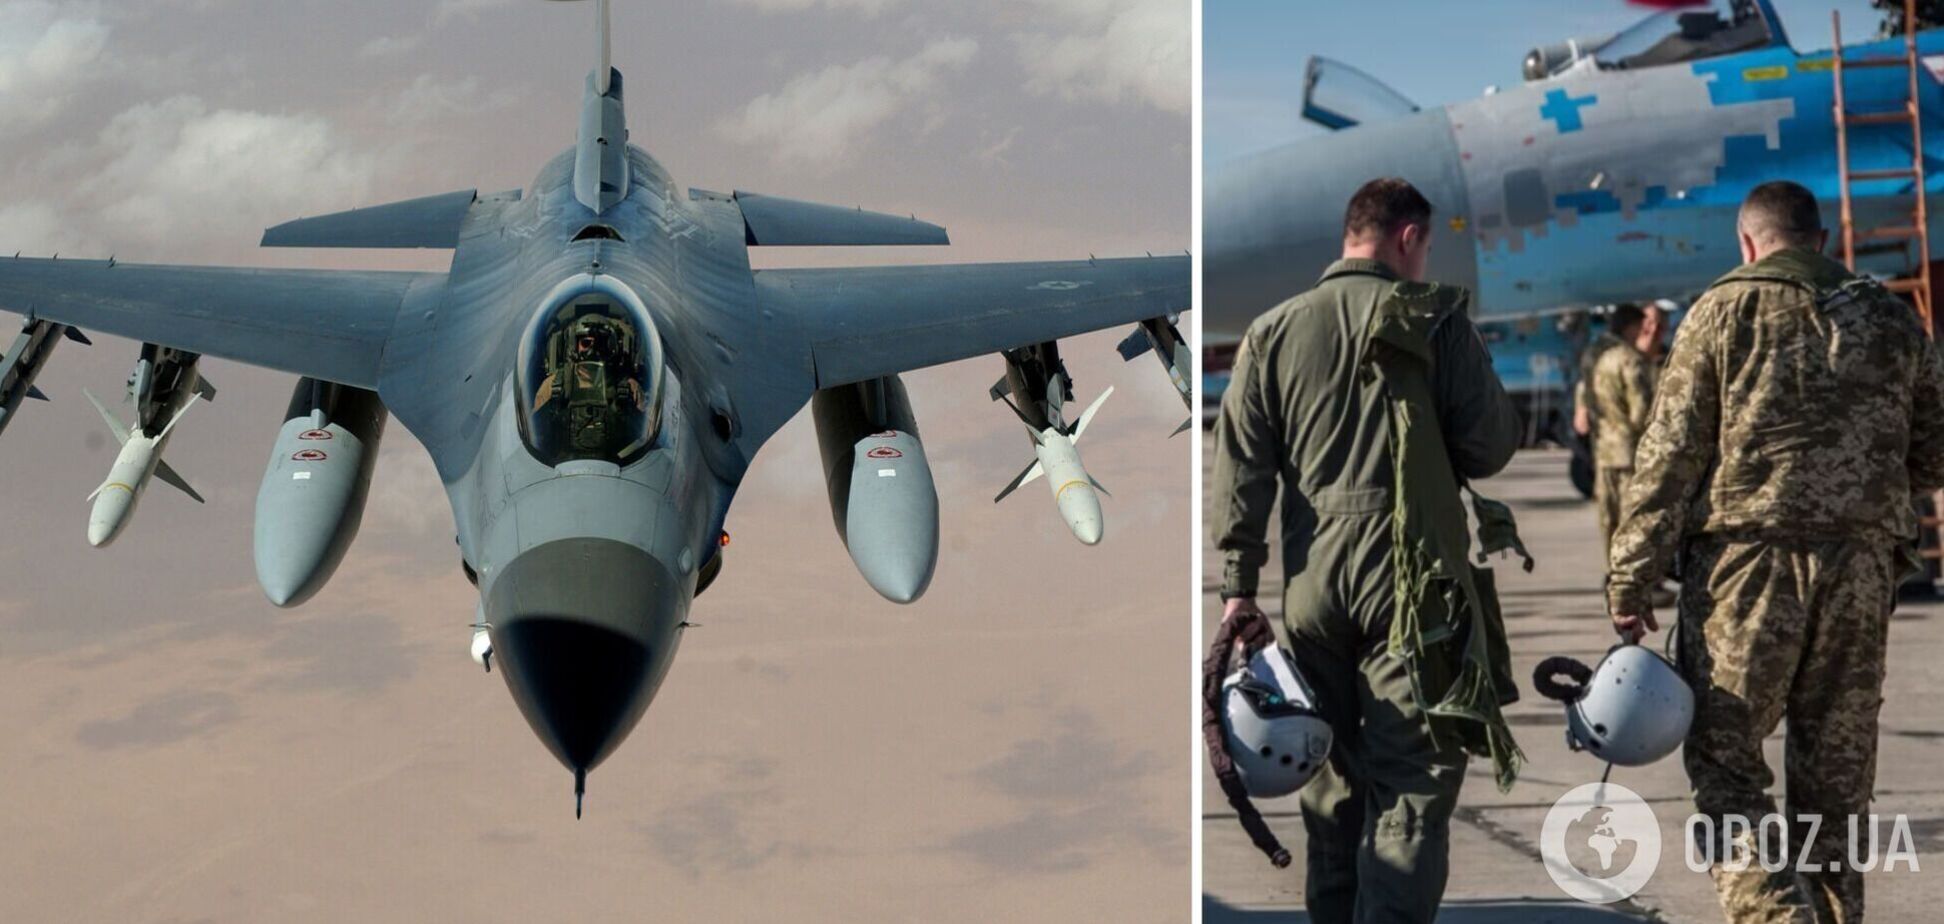 Навчання українських пілотів на F-16 у США та Данії завершується – Повітряні сили
